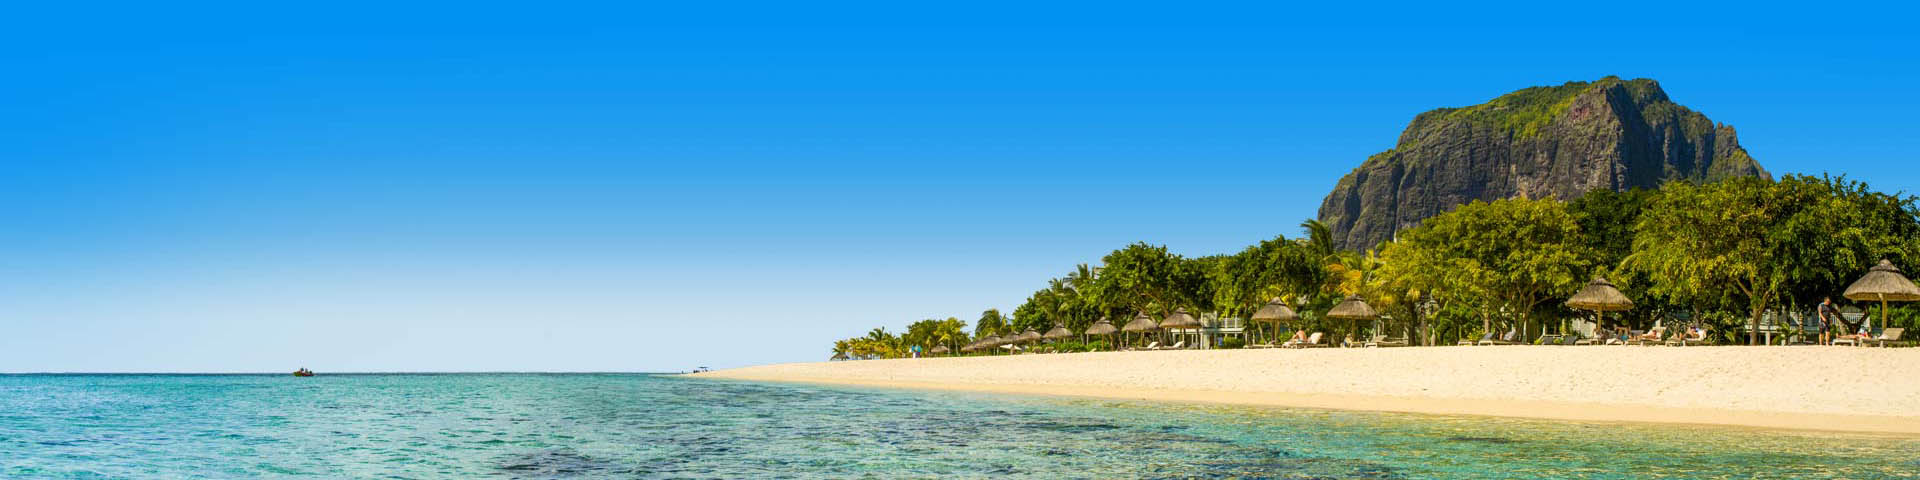 Zee met zandstrand en palmboom parasols op Mauritius